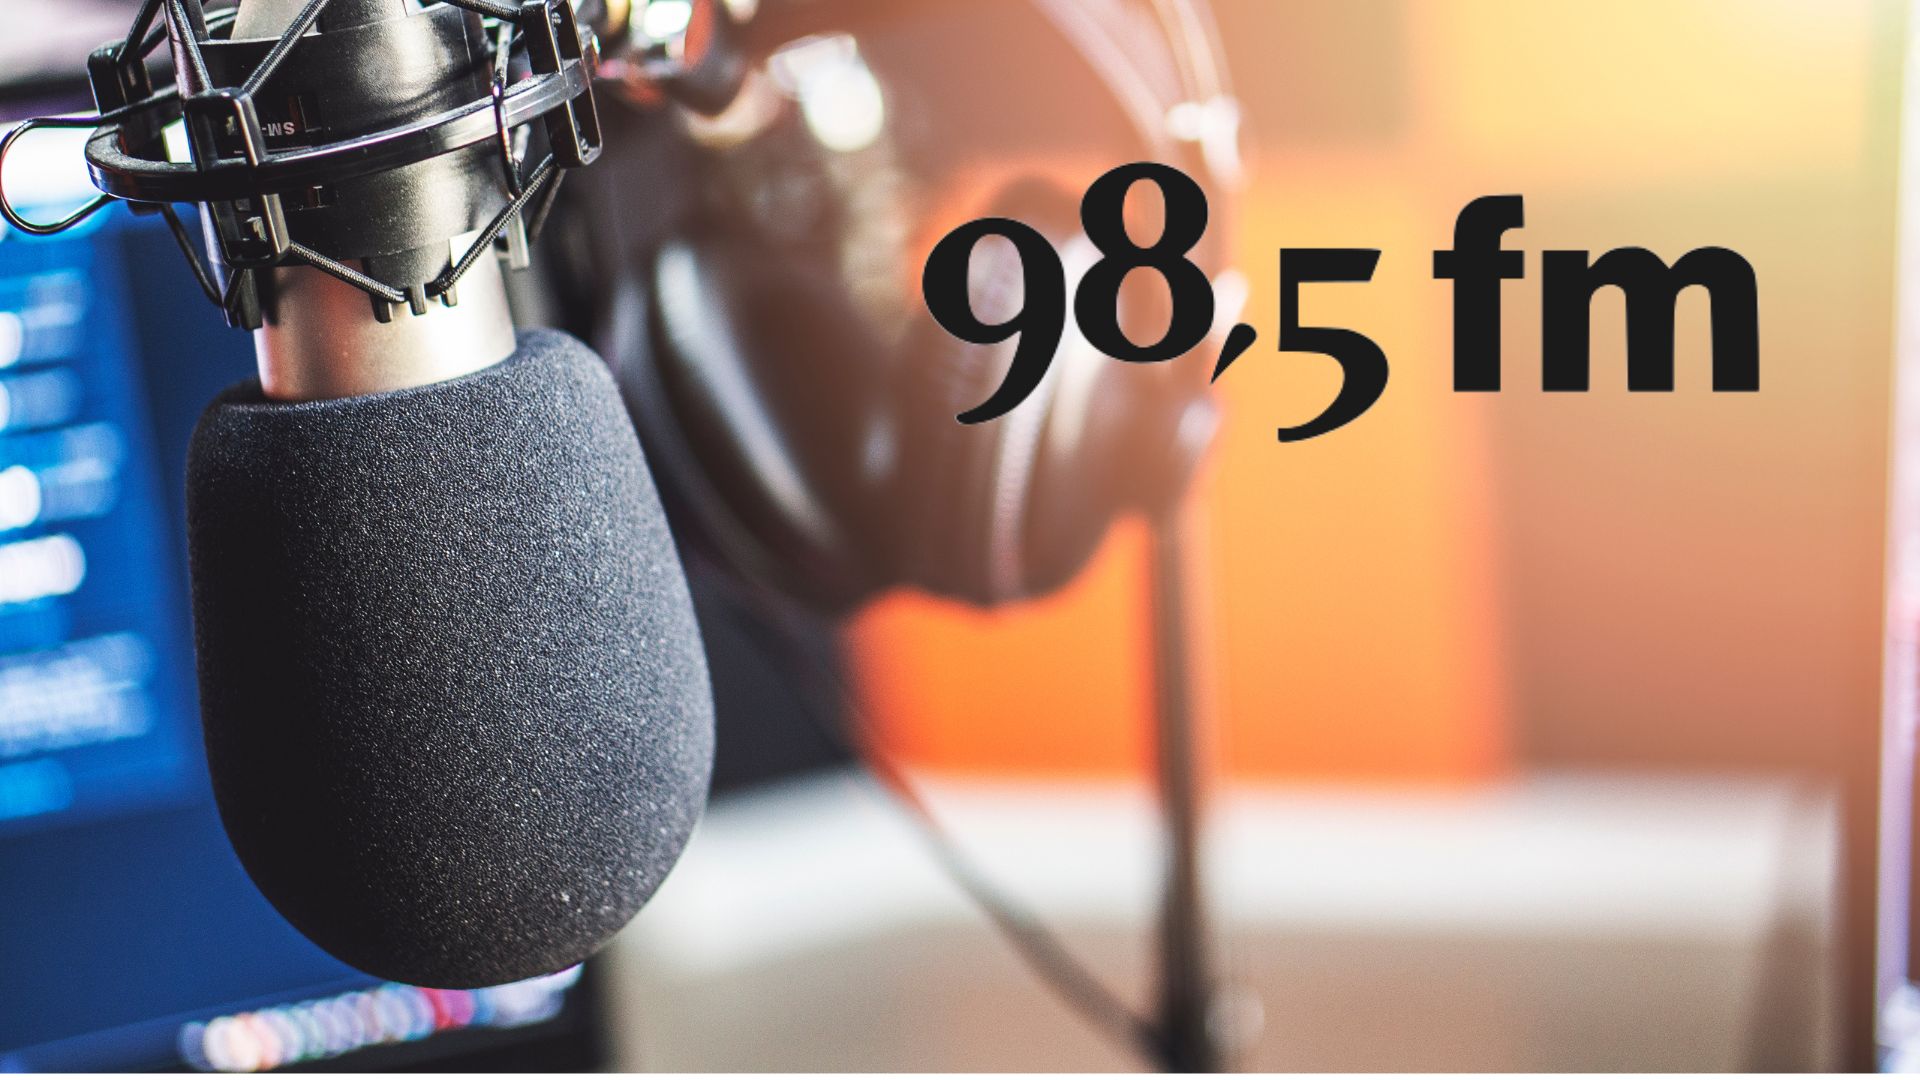 Entrevues radiophoniques au 98,5FM